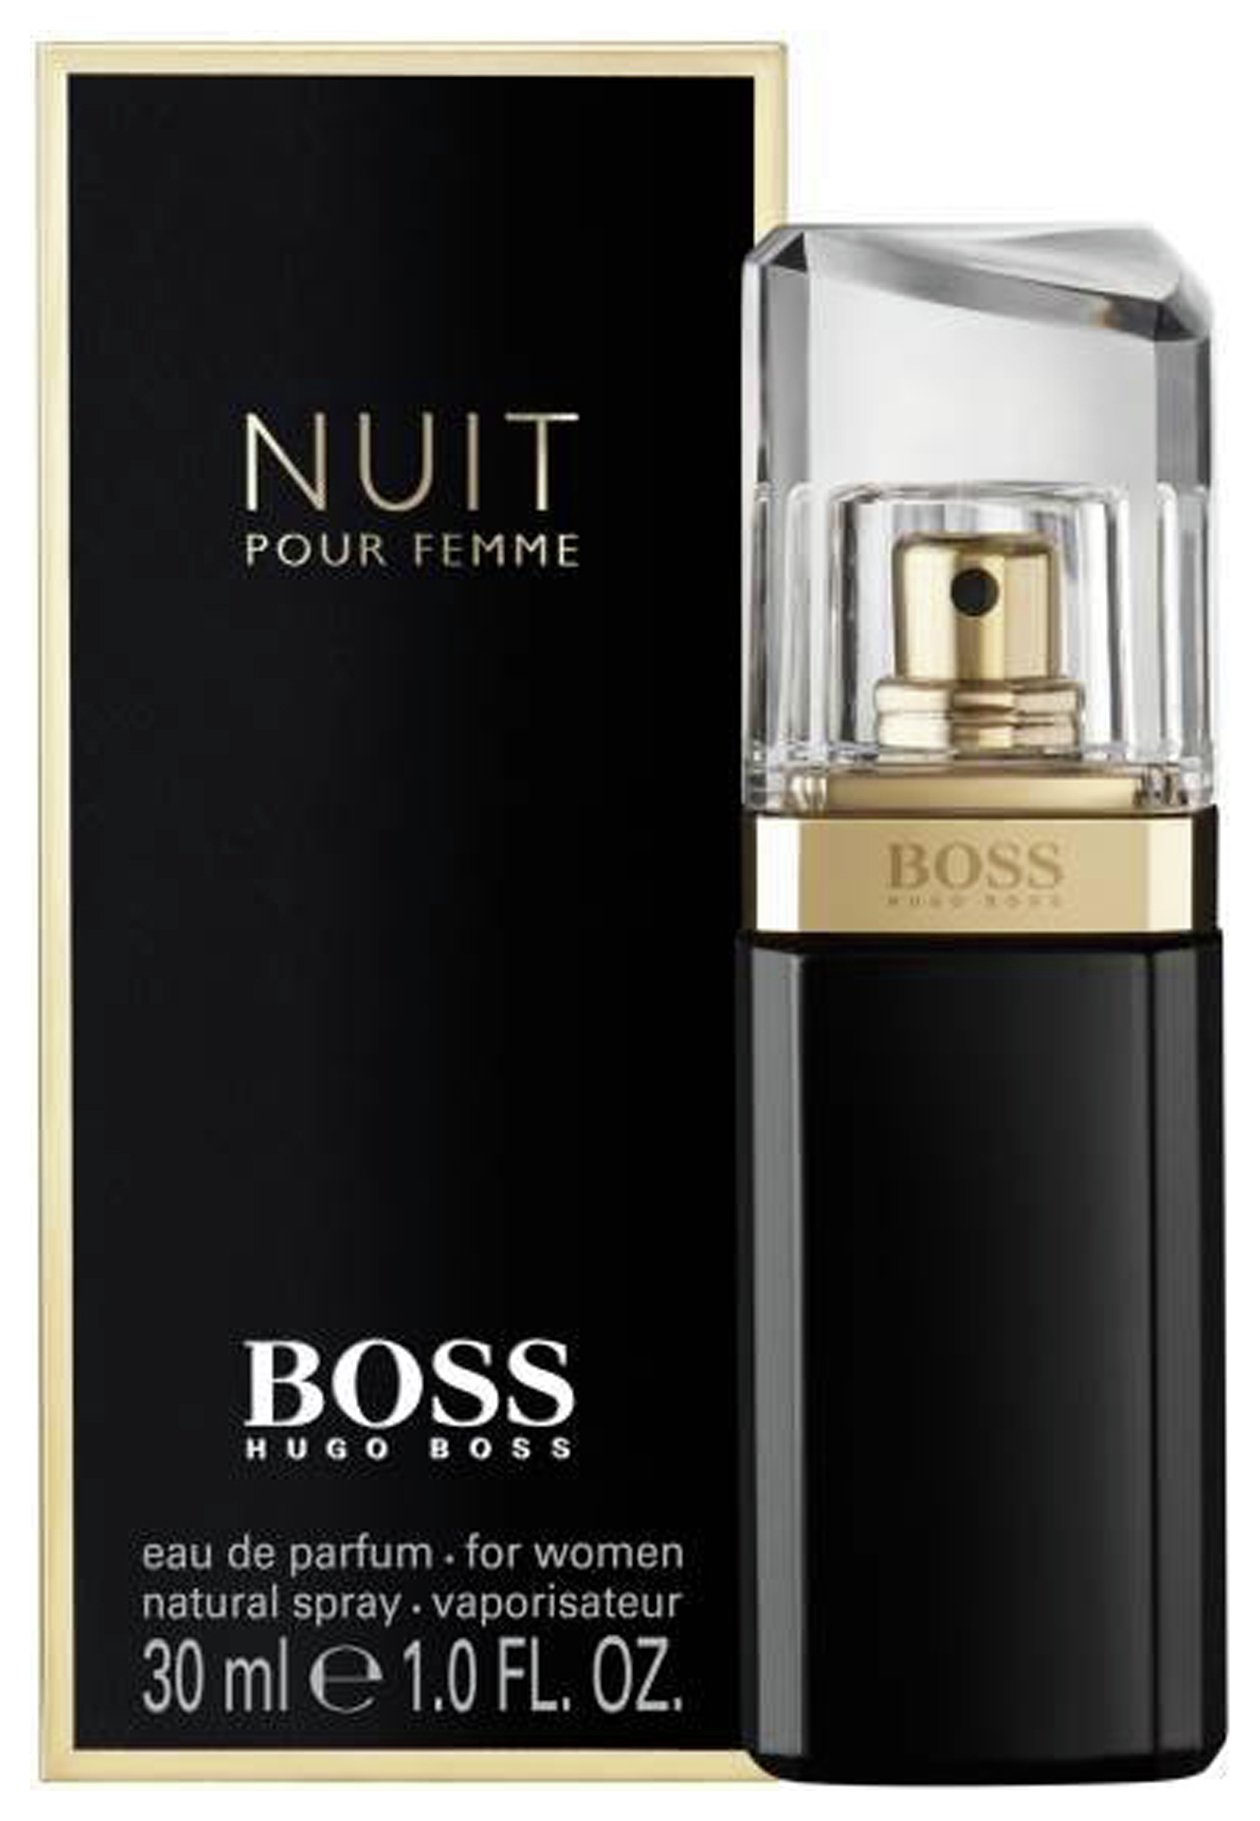 Boss Nuit Pour Femme Eau de Parfum for Women - 30ml